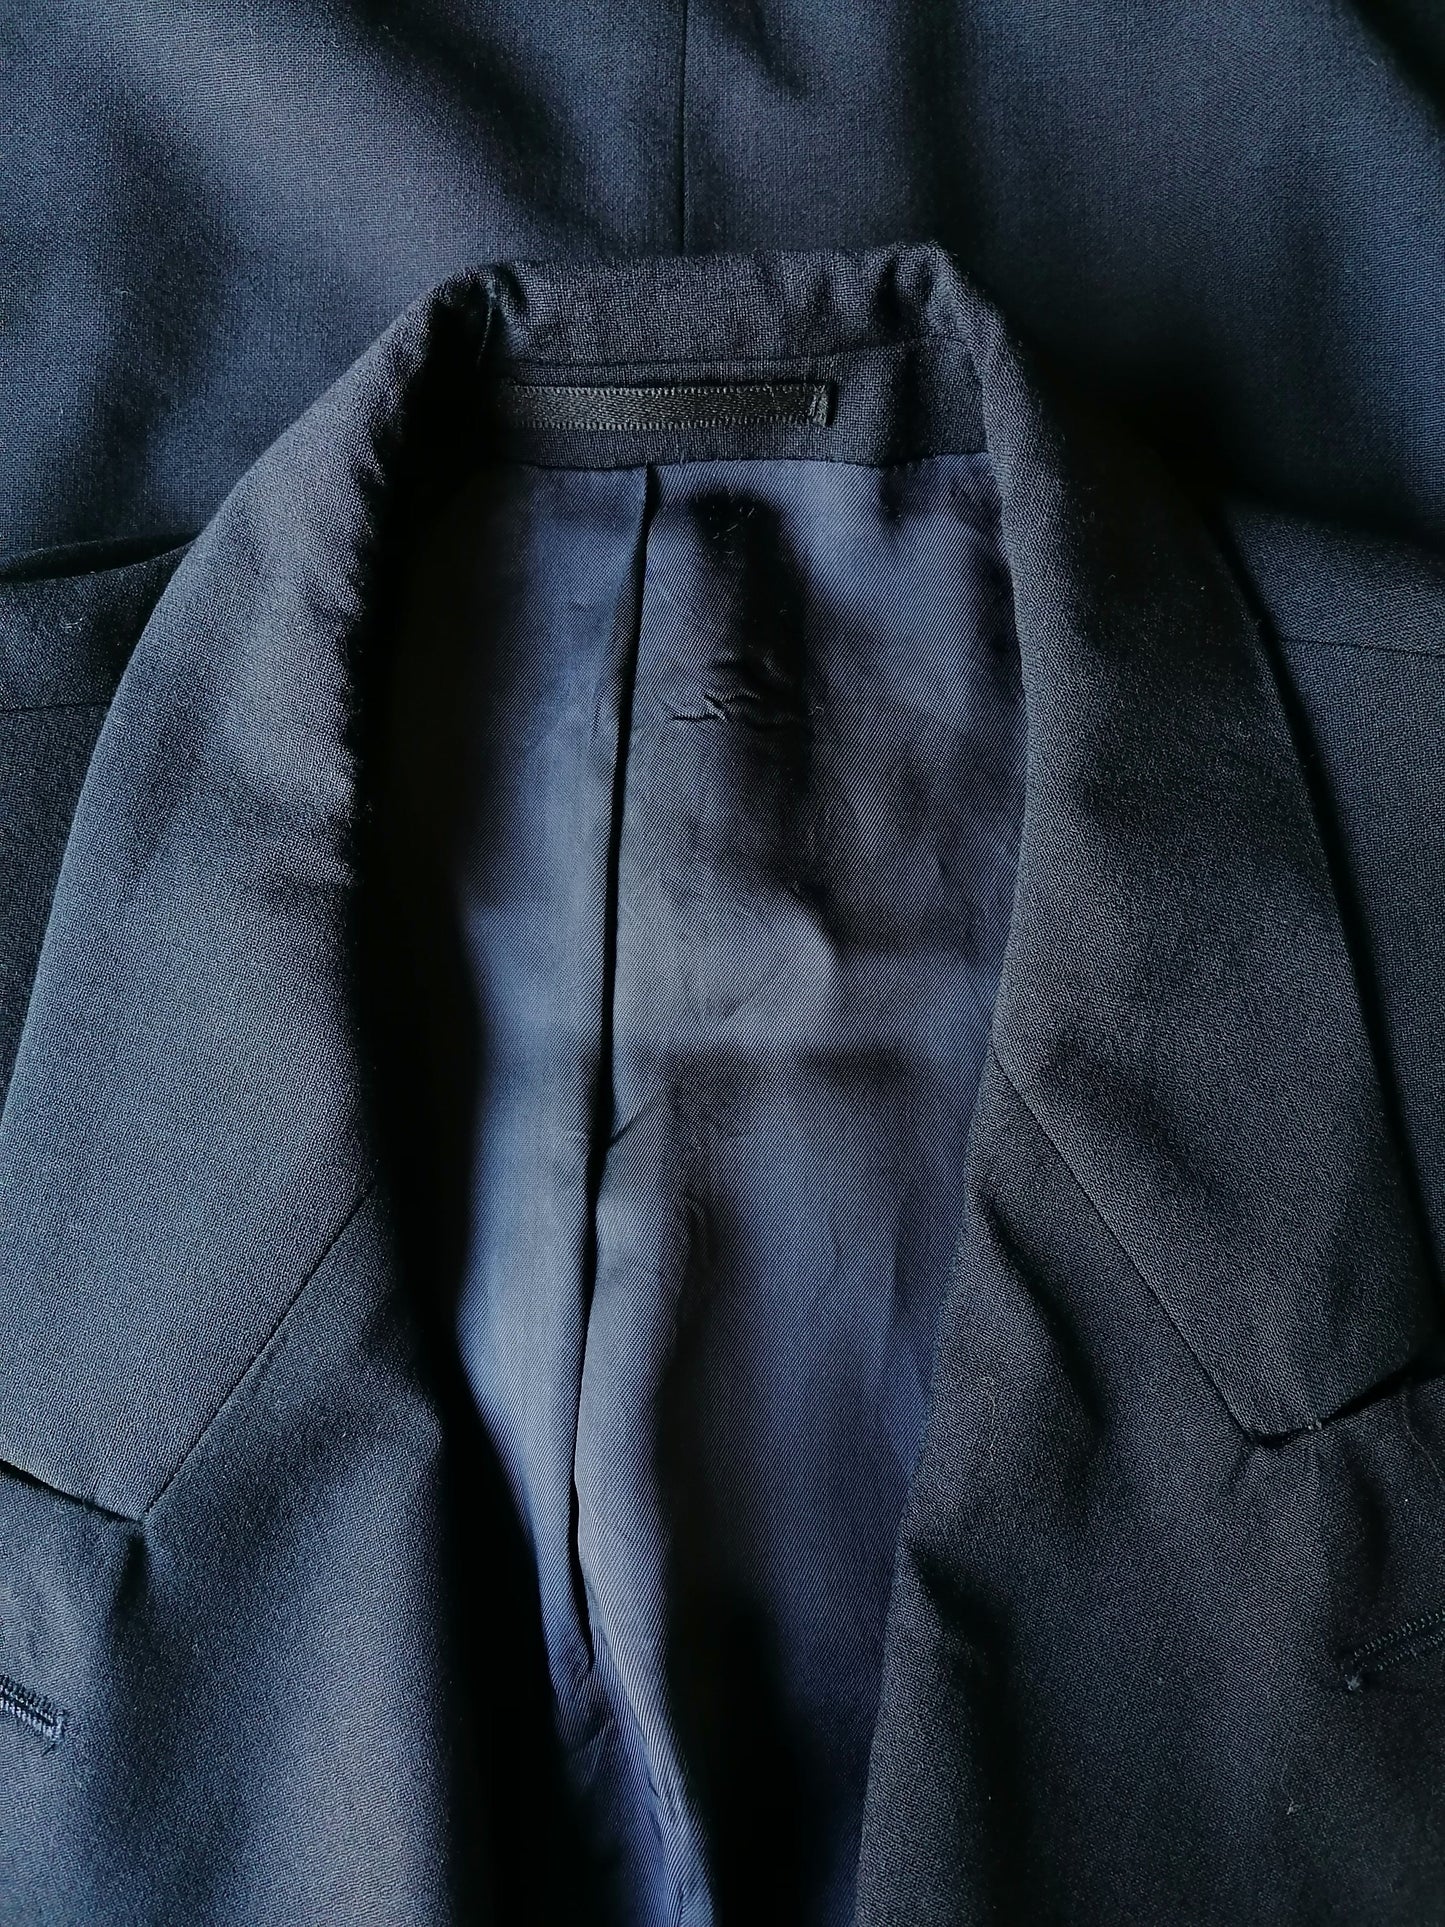 Vintage Double Breasted Wollen de Bijenkorf Kostuum. Donker Blauw. Maat 52 / L Colbert. Maat 54 / XL Pantalon